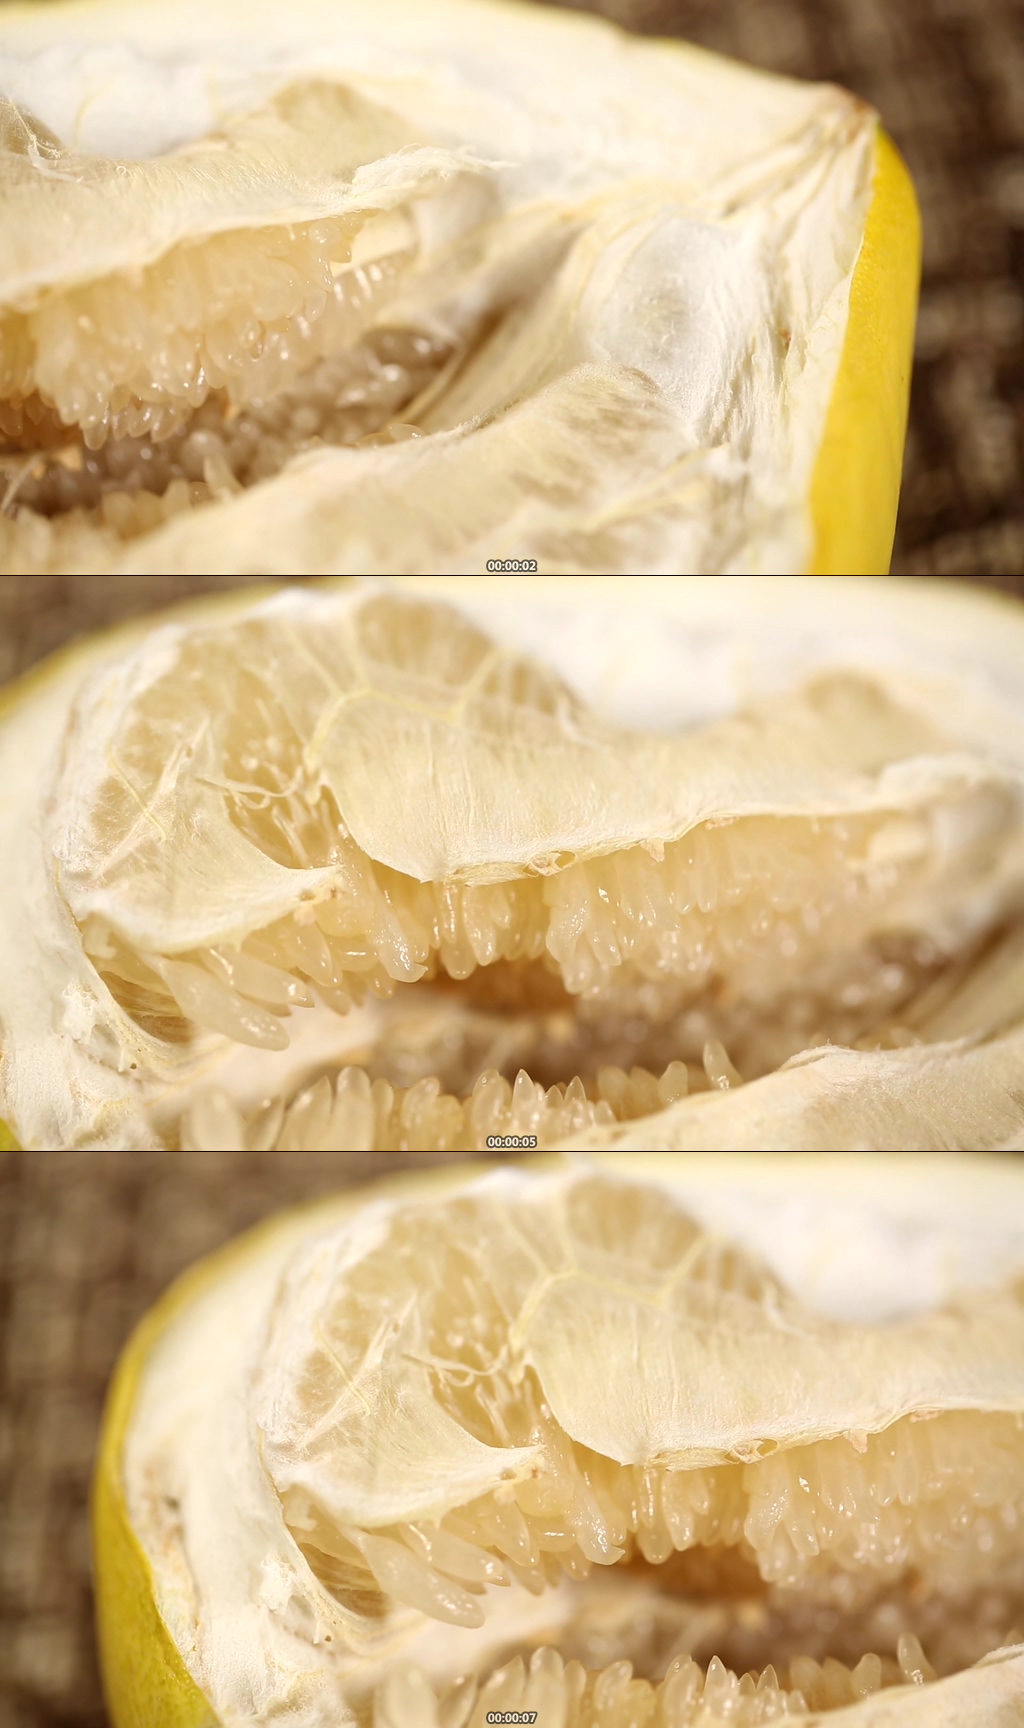 柚子粒状肉芽图片